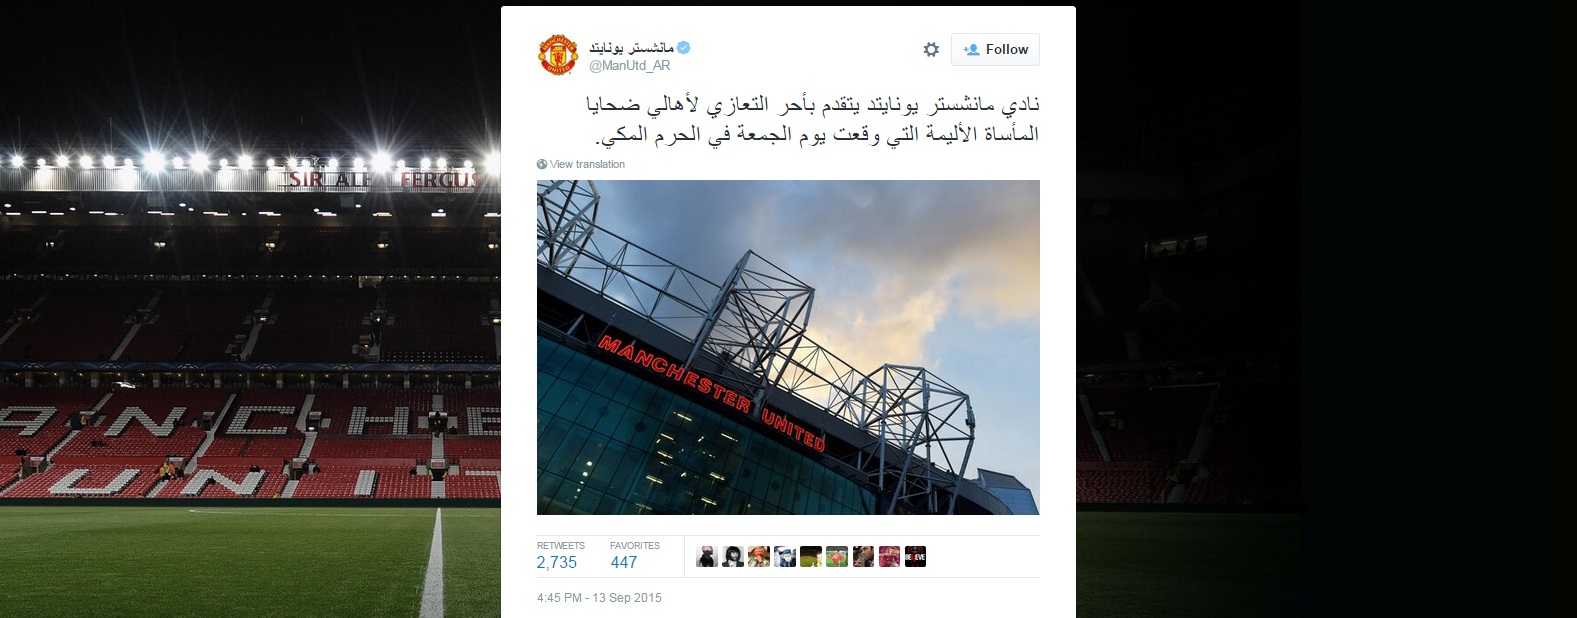 حساب توئیتر عربی باشگاه منچستریونایتد، حادثه کعبه را تسلیت گفت (عکس)